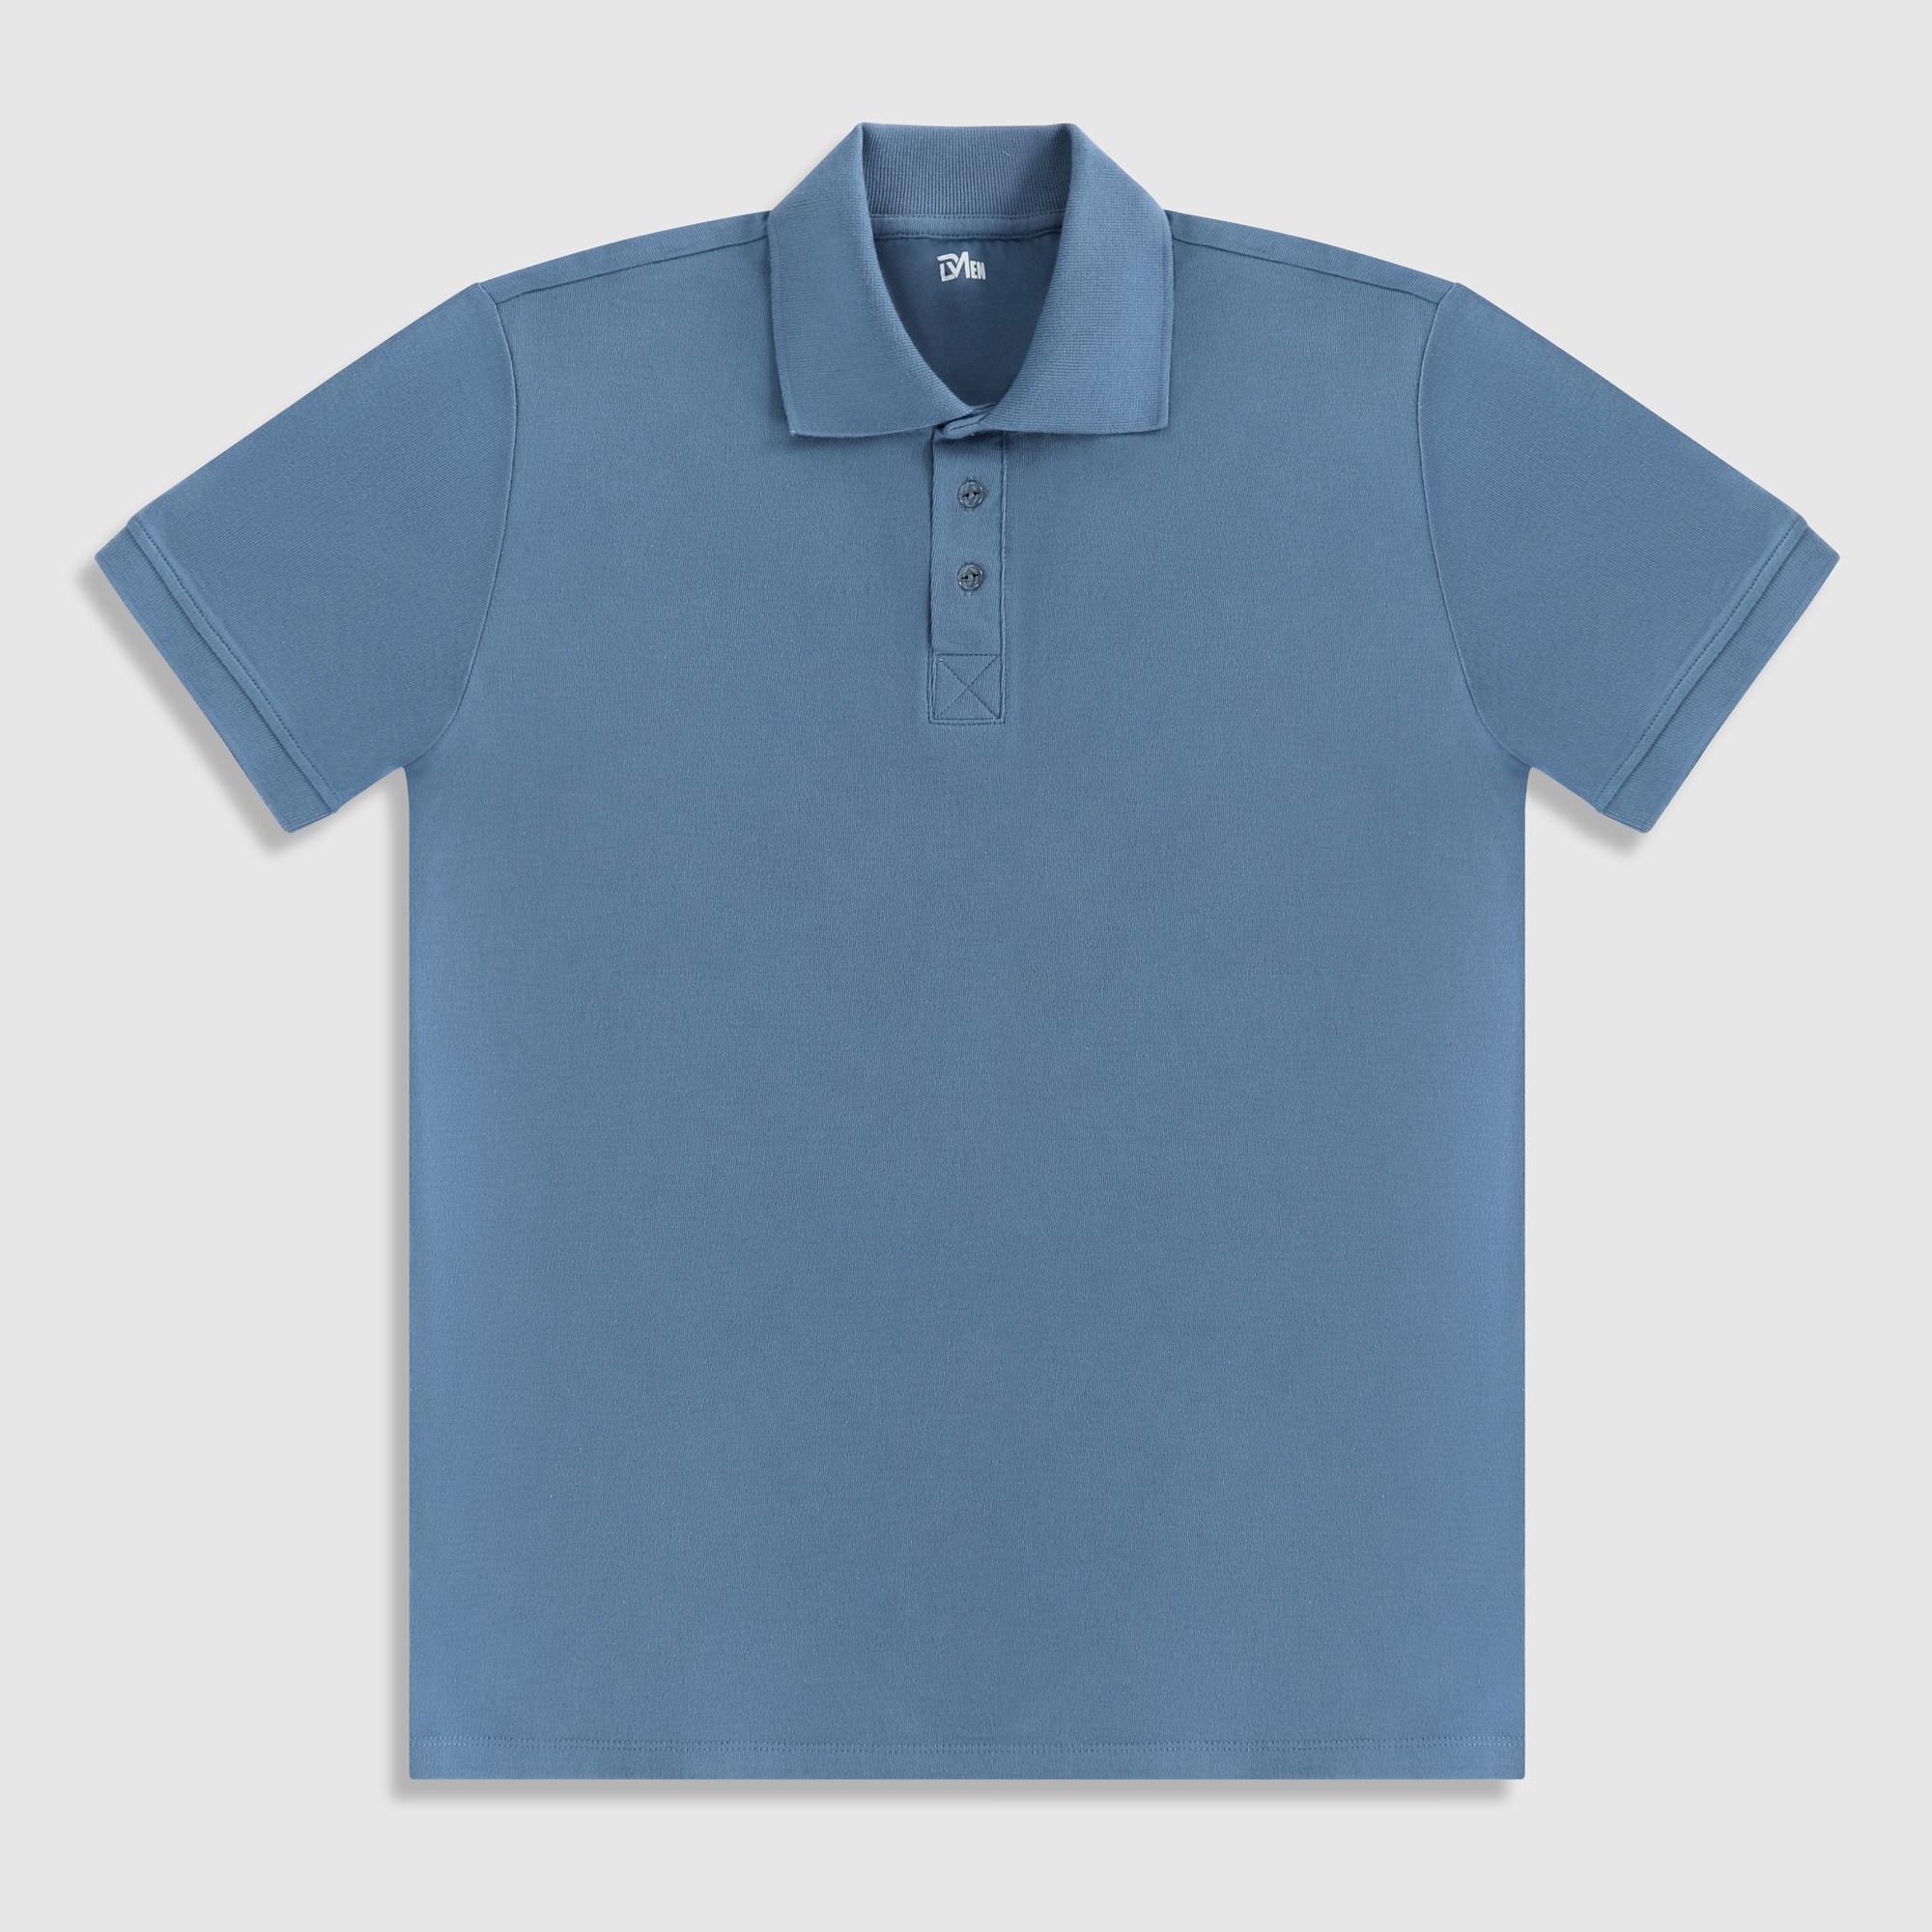 Рубашка мужская Diva Teks поло голубая, цвет голубой, размер 2XL - фото 1